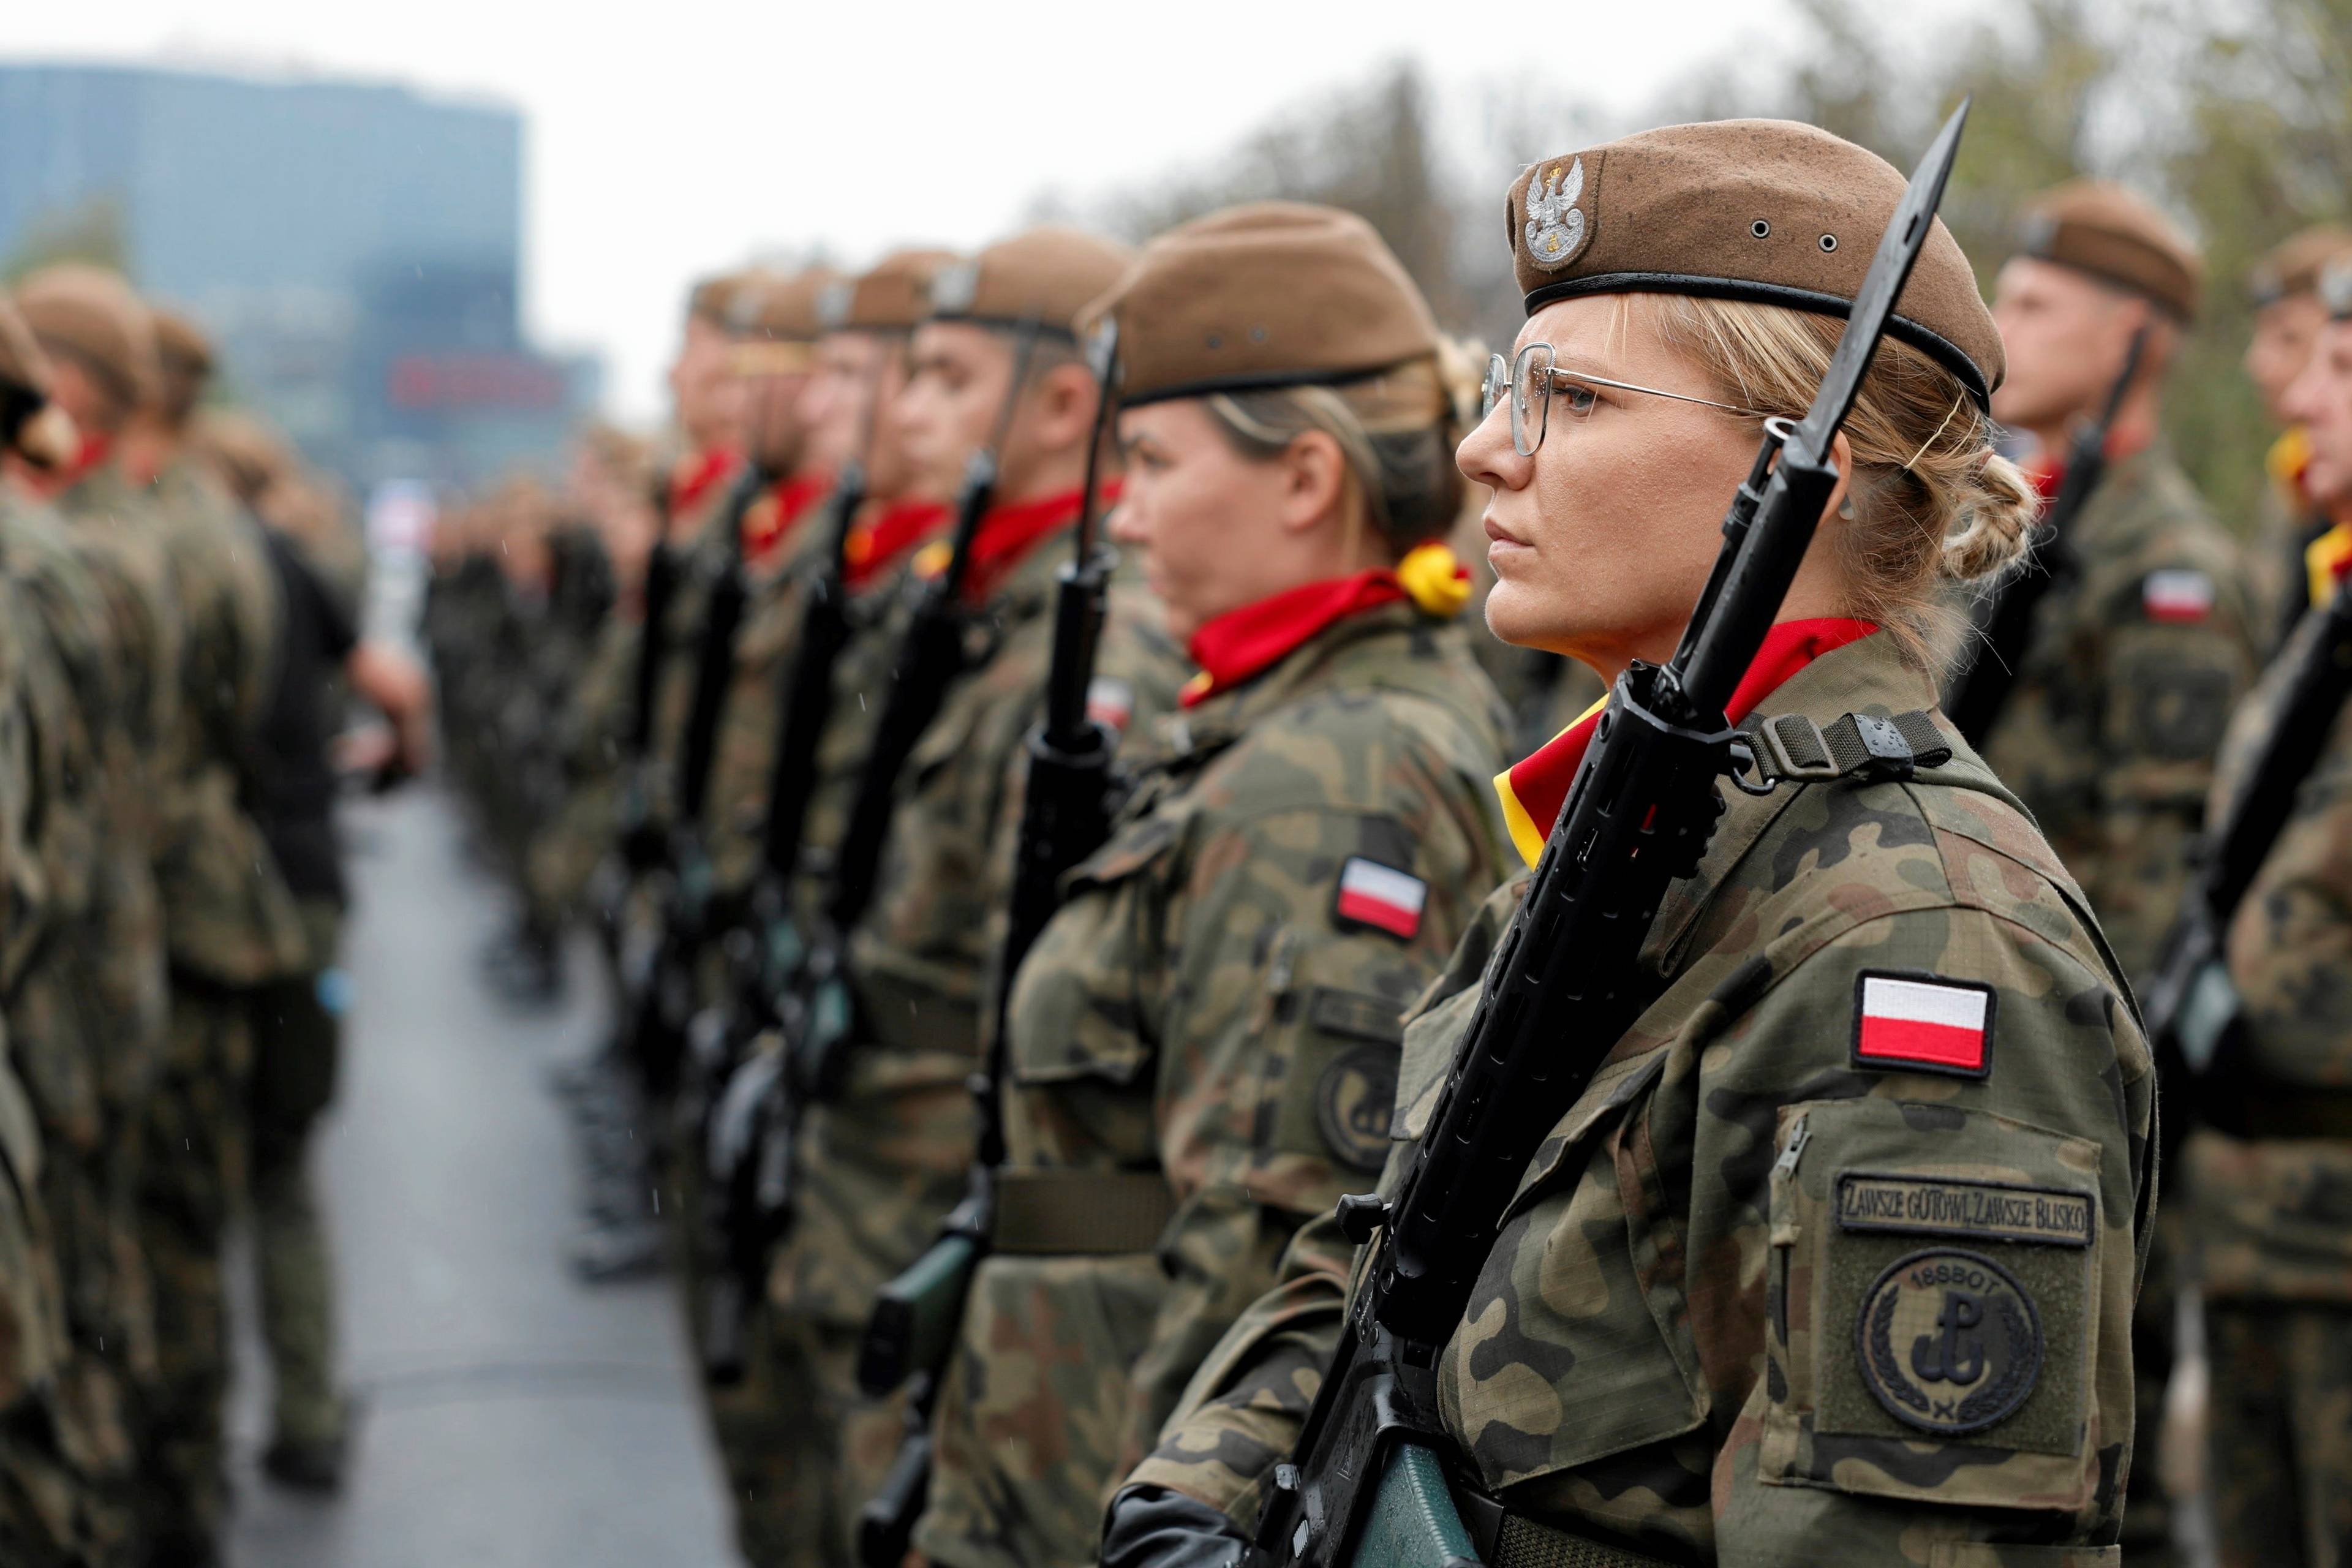 dziewczyny w mundurach obrony terytorialnej stoją w szeregu